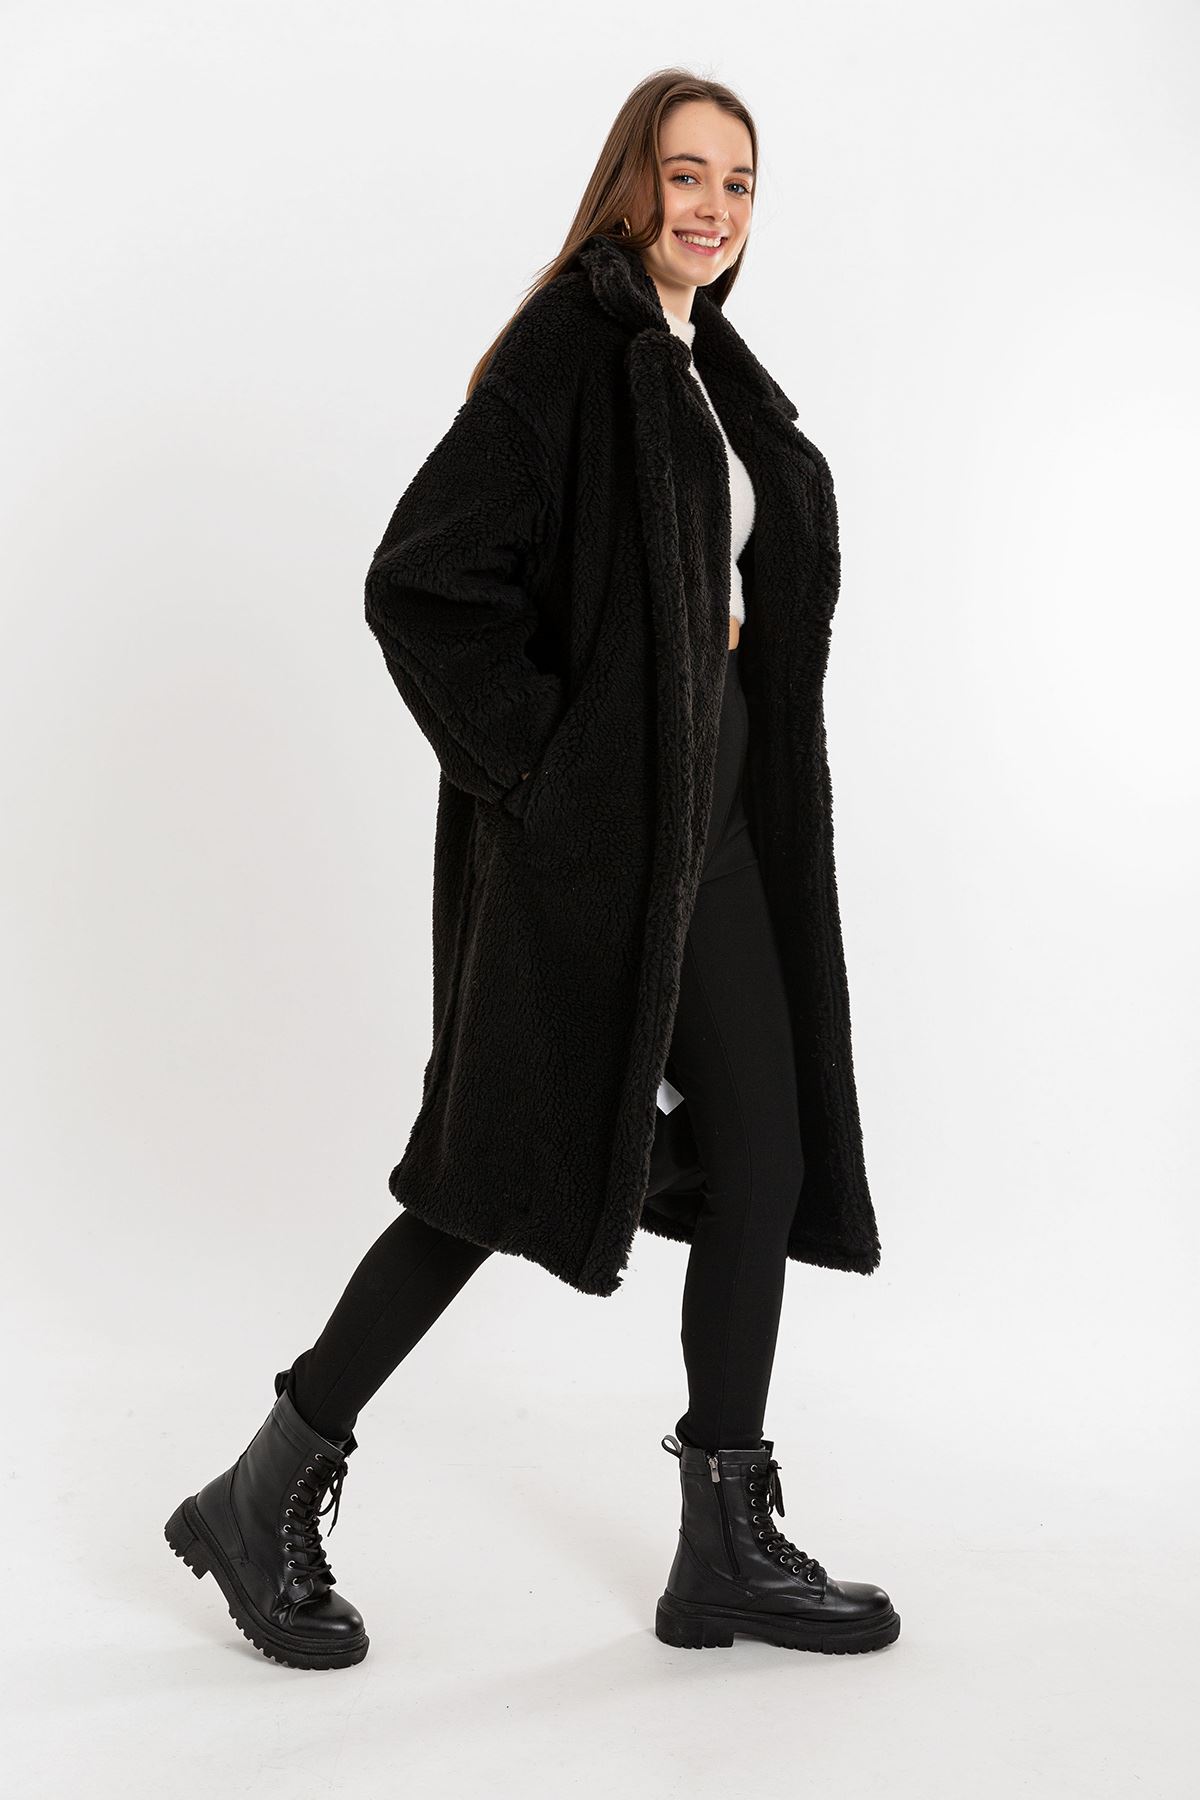 Teddy Fabric Long Sleeve Revere Collar Below Knees Oversize Women'S Coat - Black